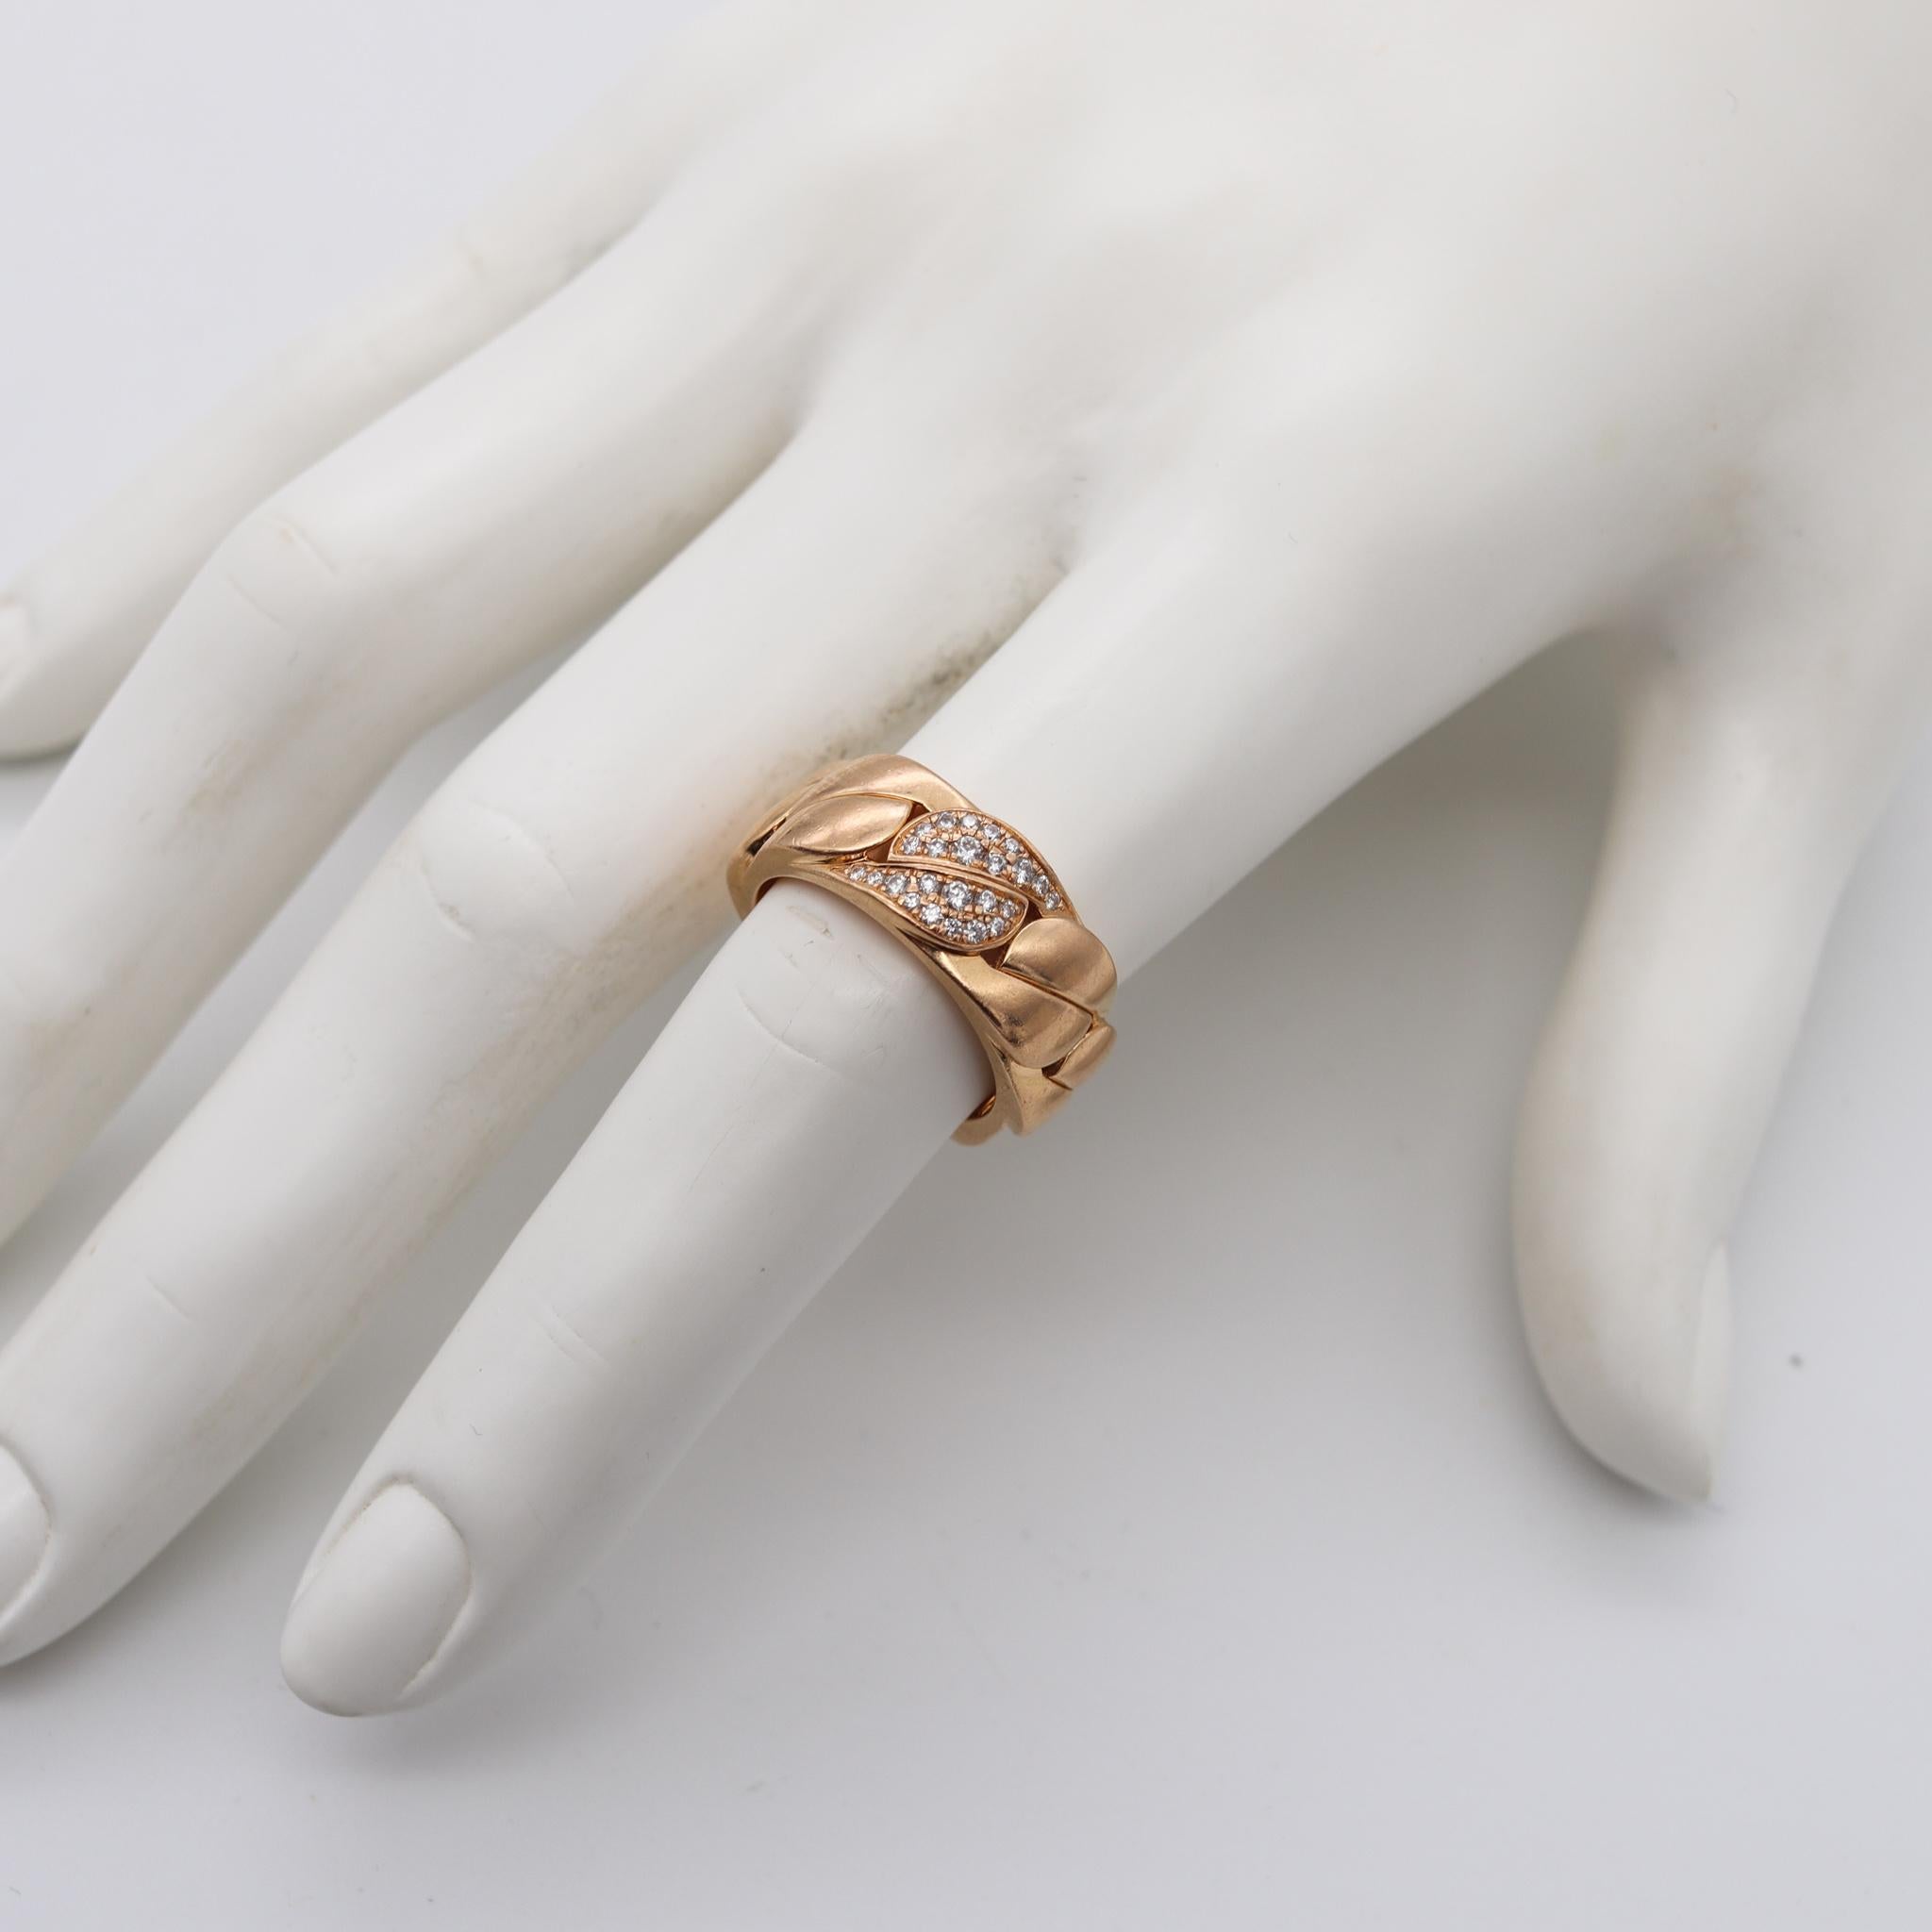 Ring La Dona, entworfen von Cartier.

Eine zeitgenössische Kreation aus dem Hause Cartier in Paris, Frankreich. Dieser ikonische Ring ist Teil der Kollektion La Dona und wurde aus massivem 18-karätigem Gelbgold mit hochglanzpolierter Oberfläche